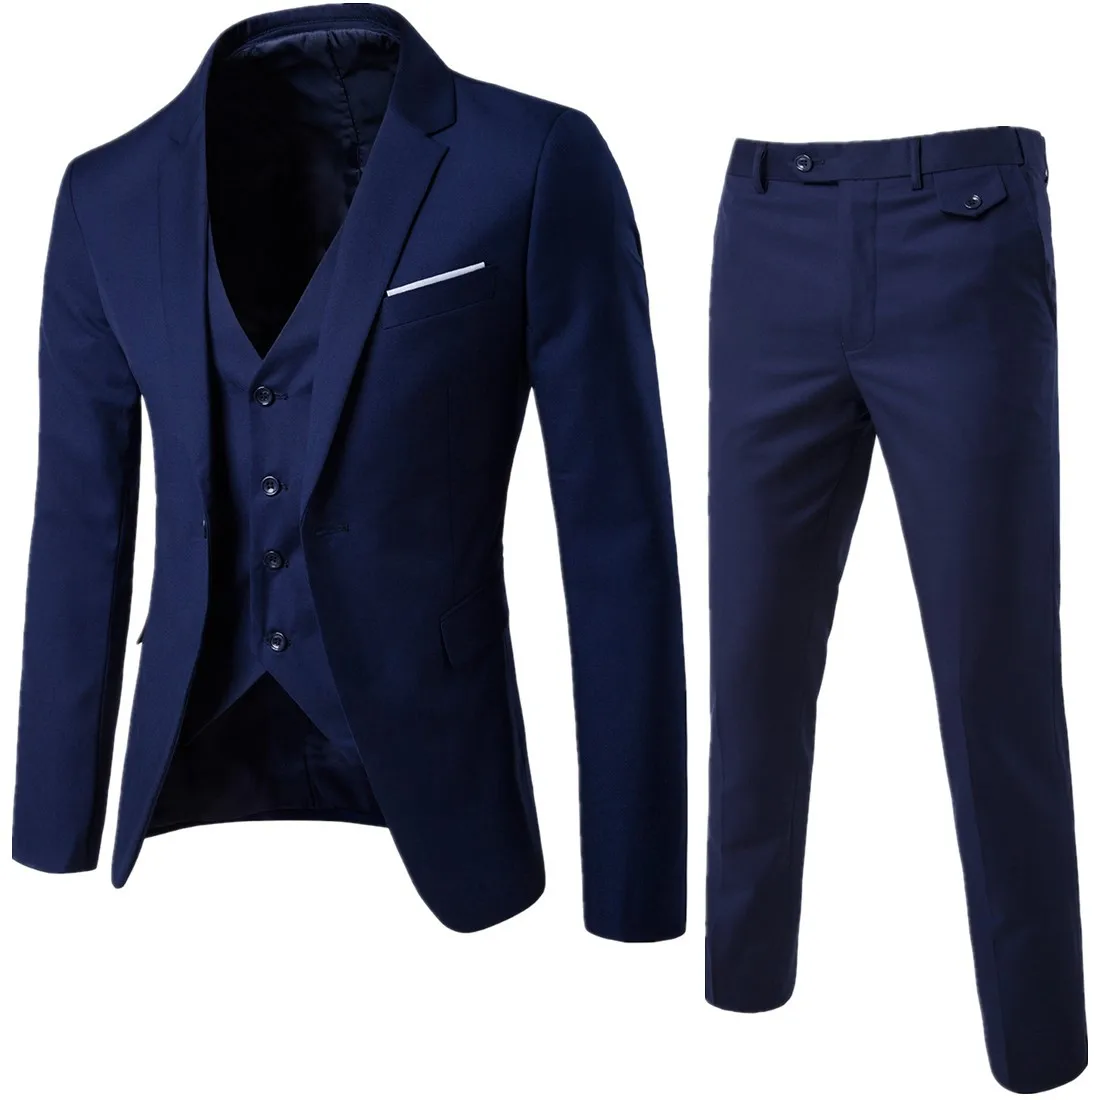 New Men's Three-piece Suit Suit Men's Suit Korean Version Slim Casual Groom Best Man Wedding Dress Trend Mens Suit